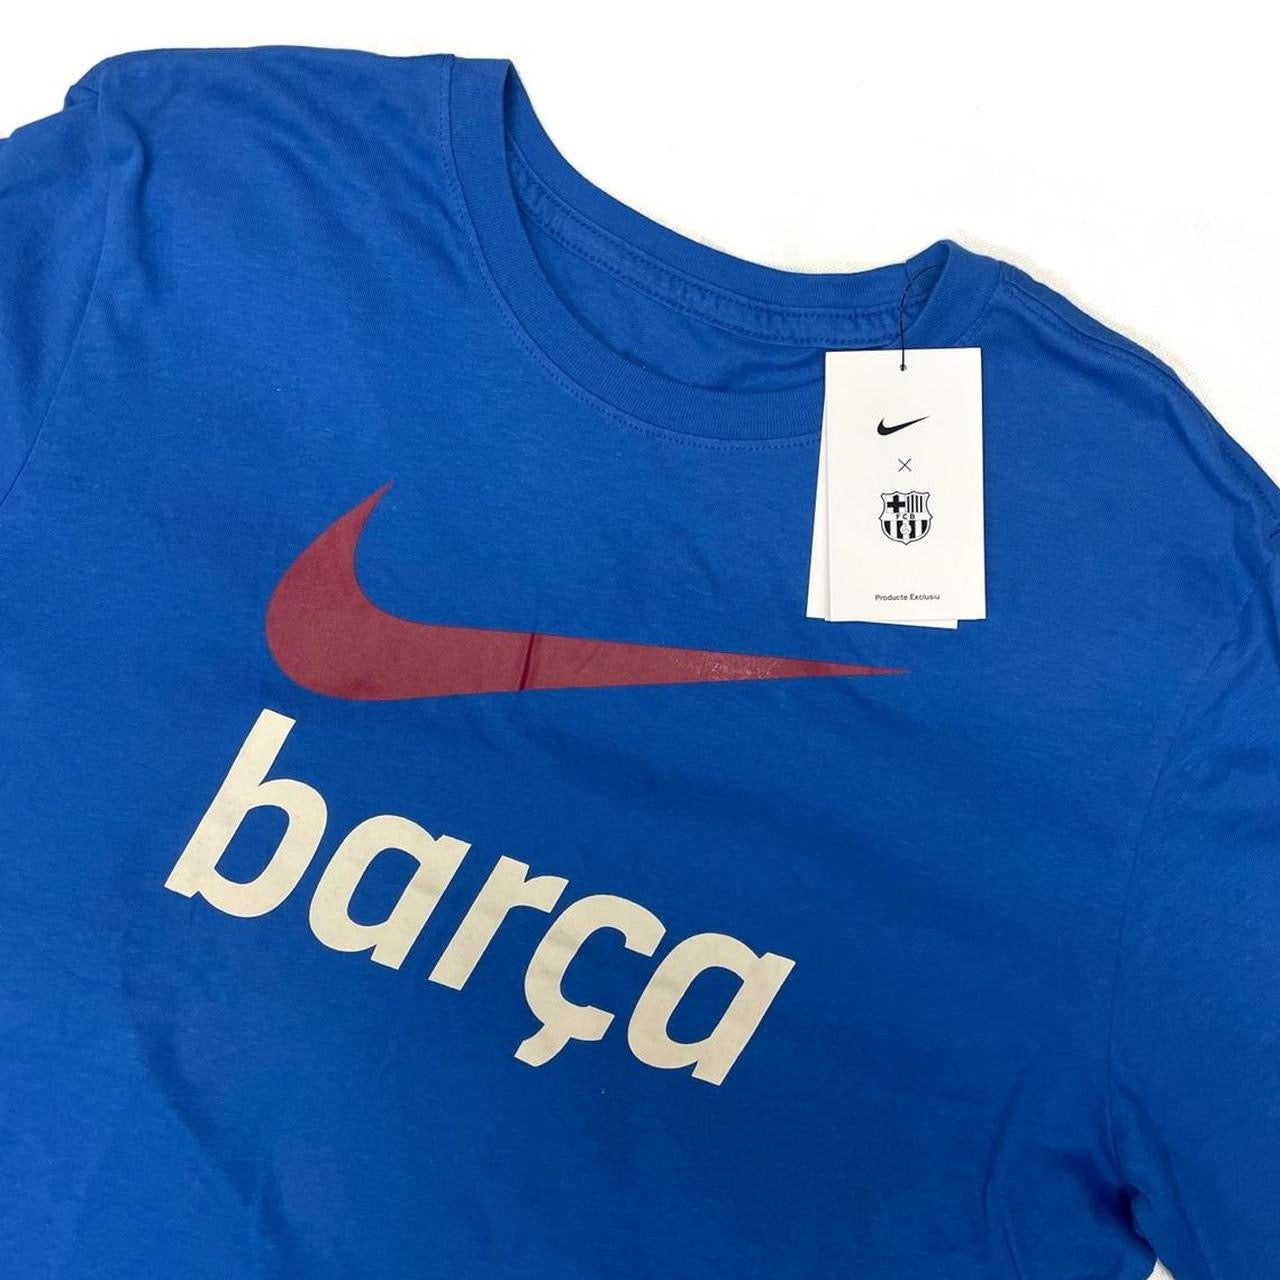 Nike ‘Barca’ Tee ( L & S )